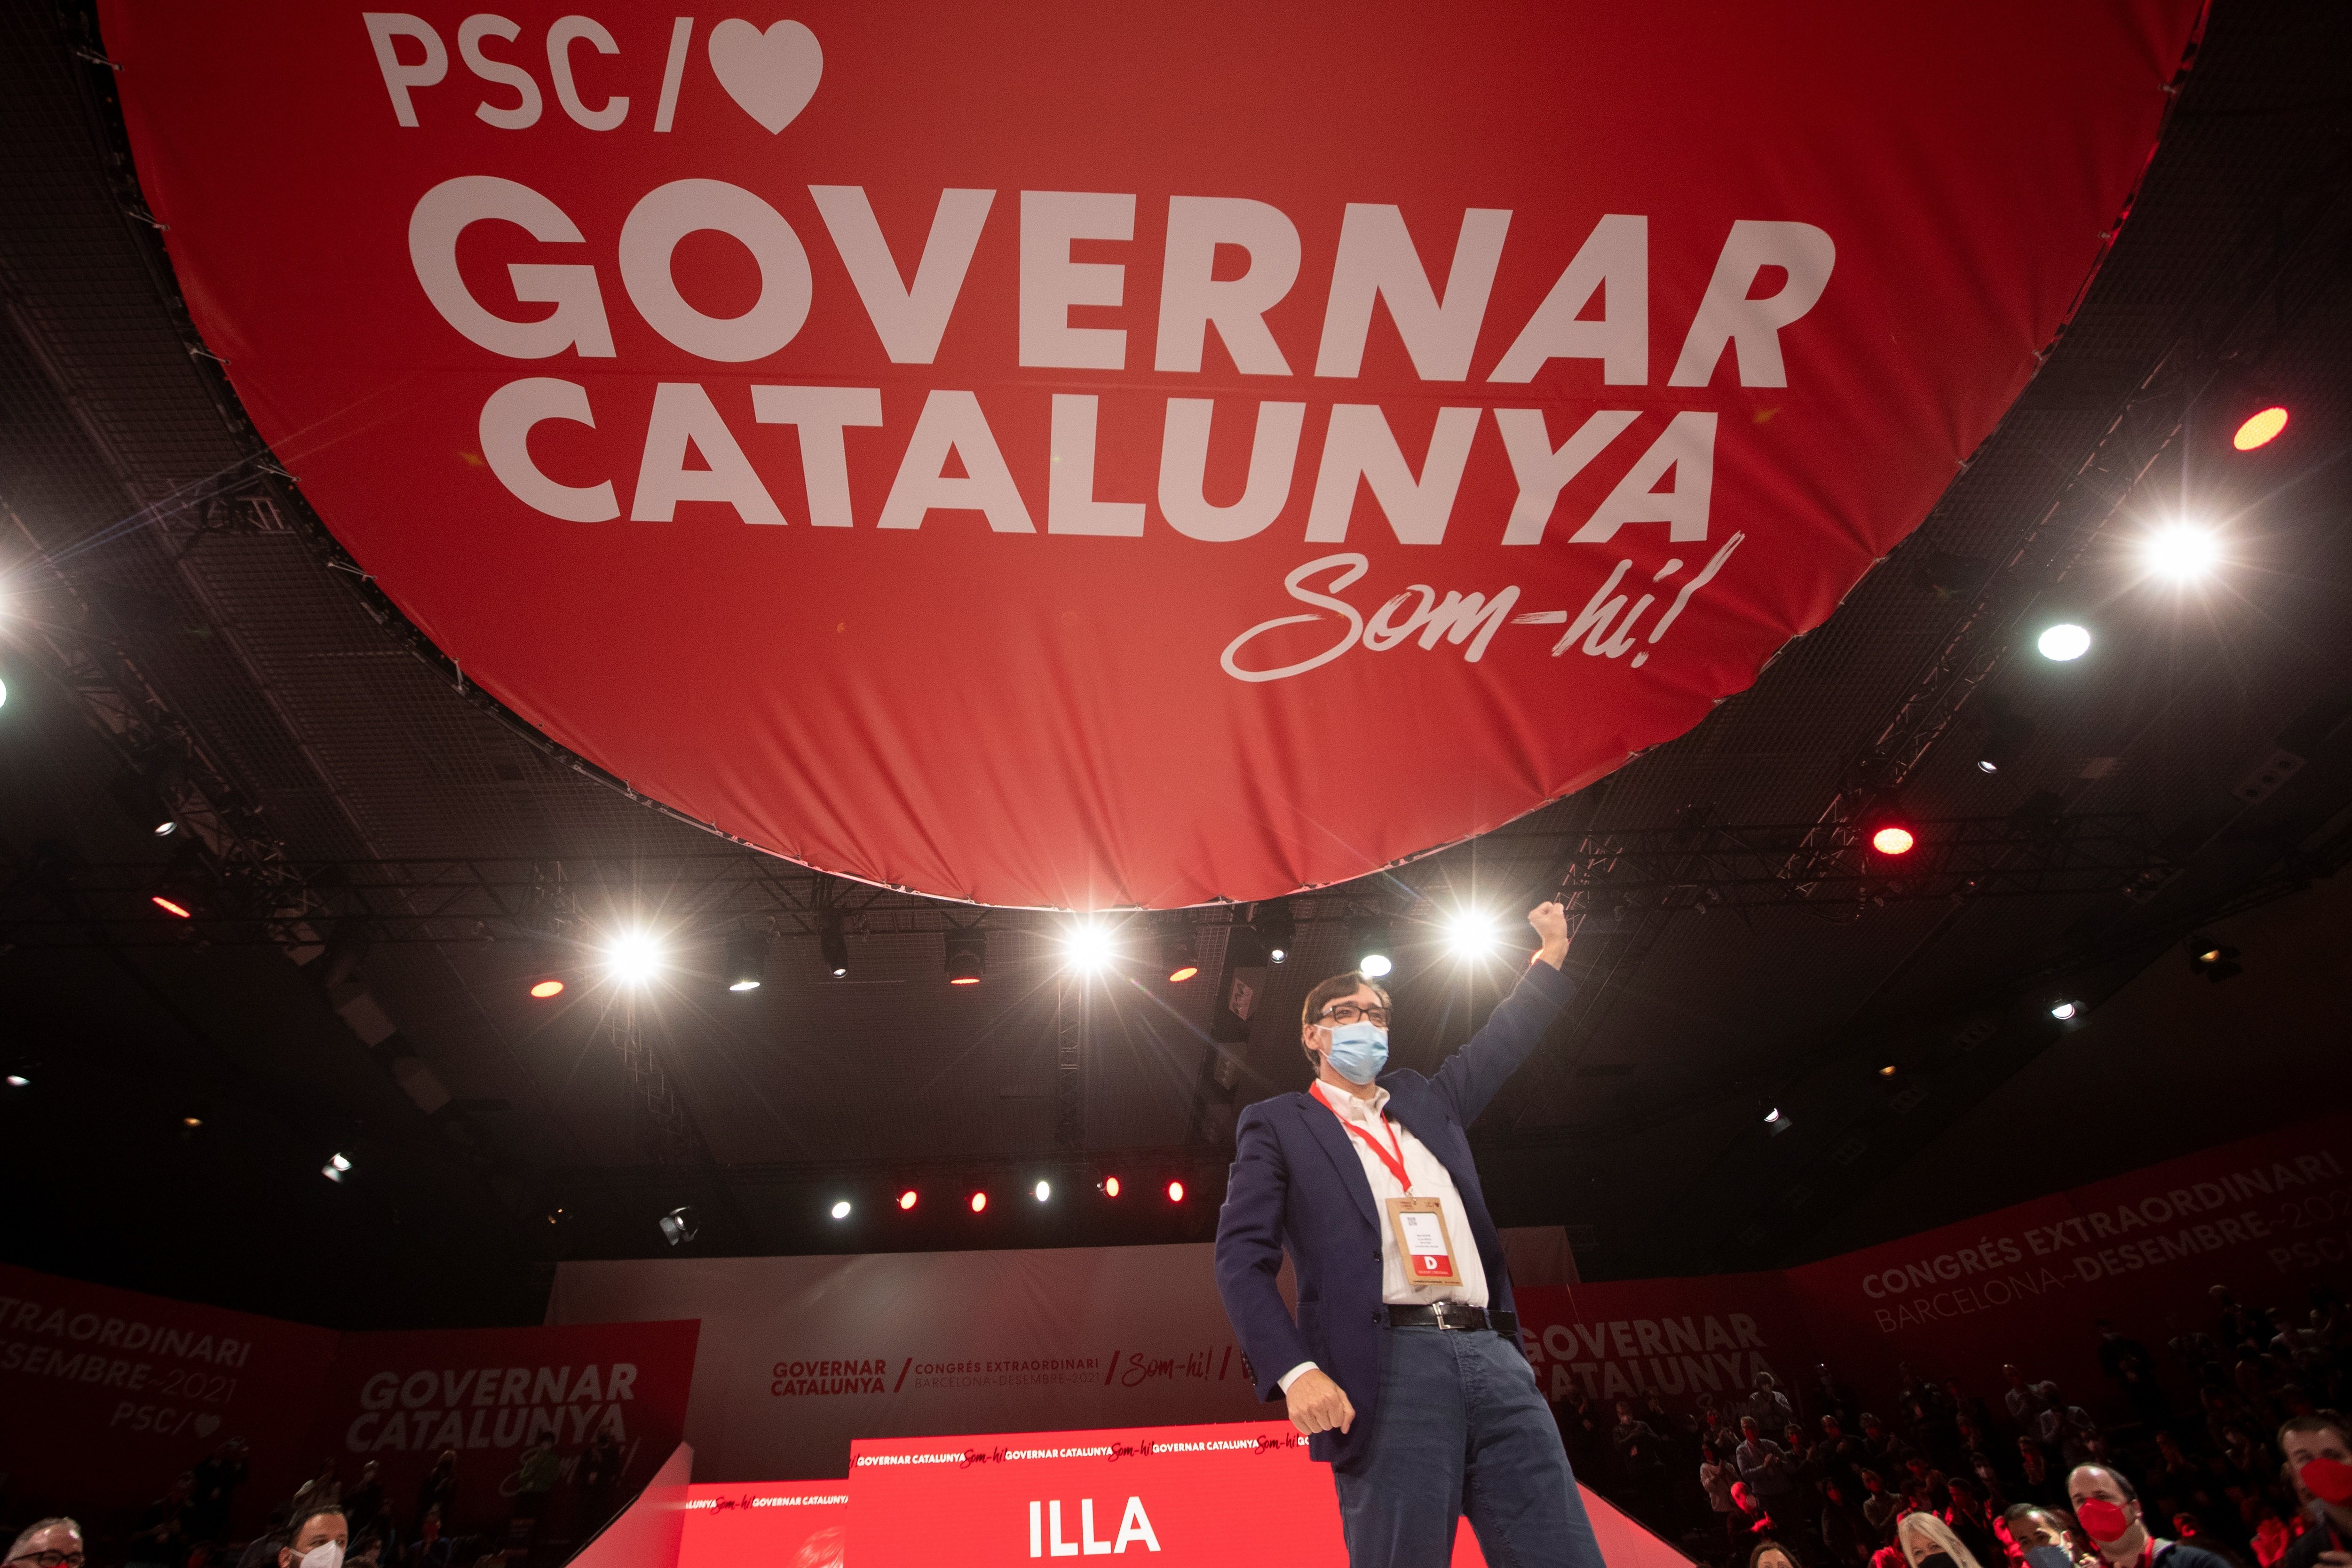 El PSC un año después del 14F: un "reencuentro" anclado en el españolismo